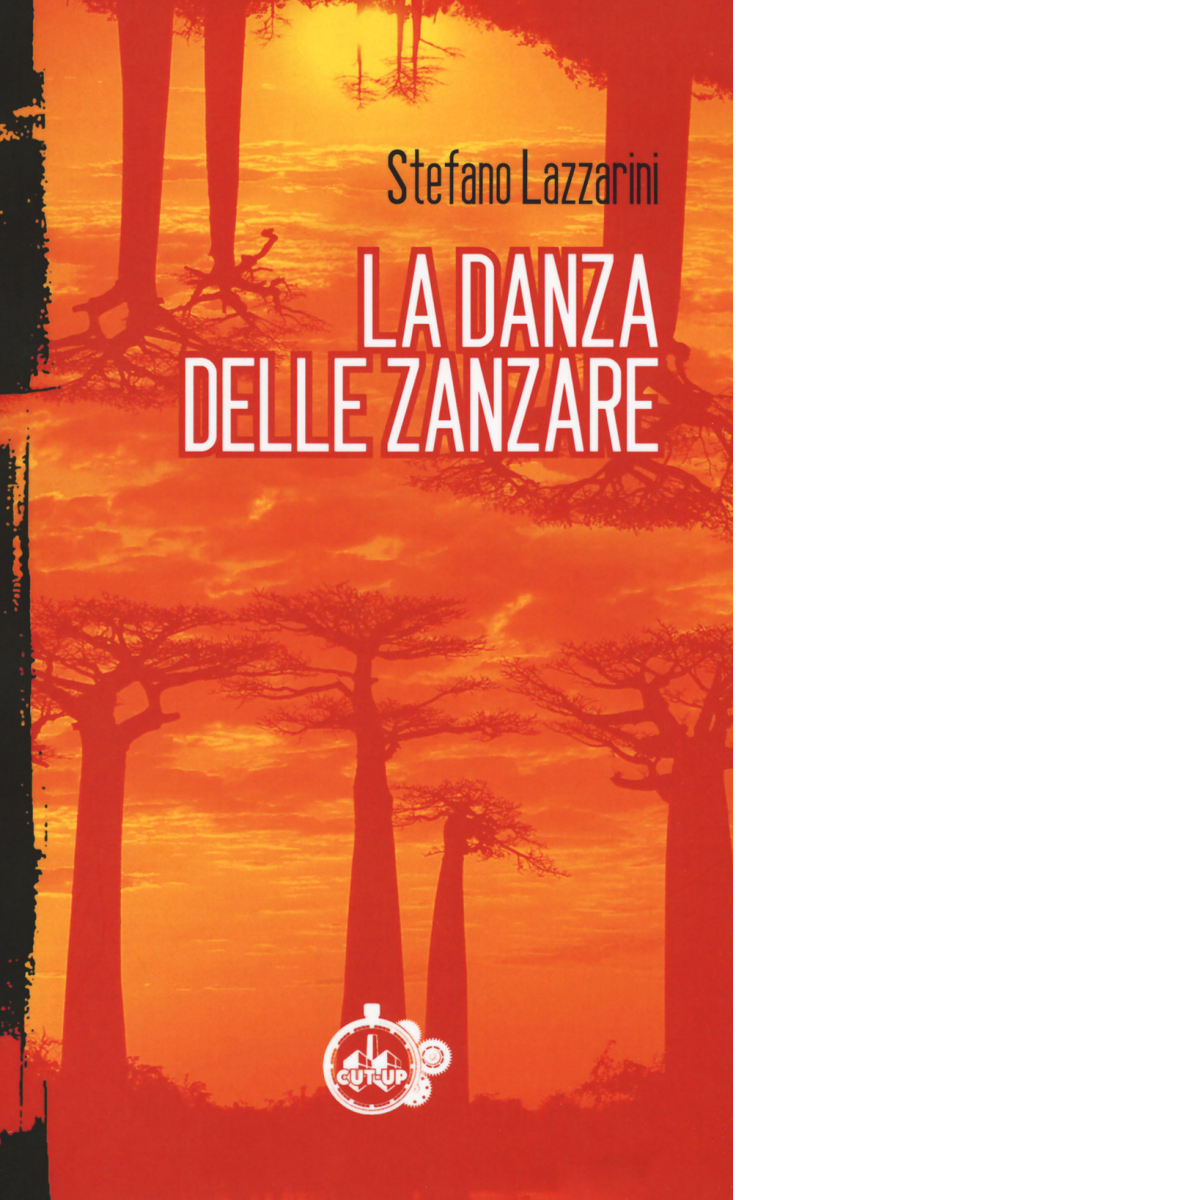 La danza delle zanzare di Stefano Lazzarini - Cut-up, 2018